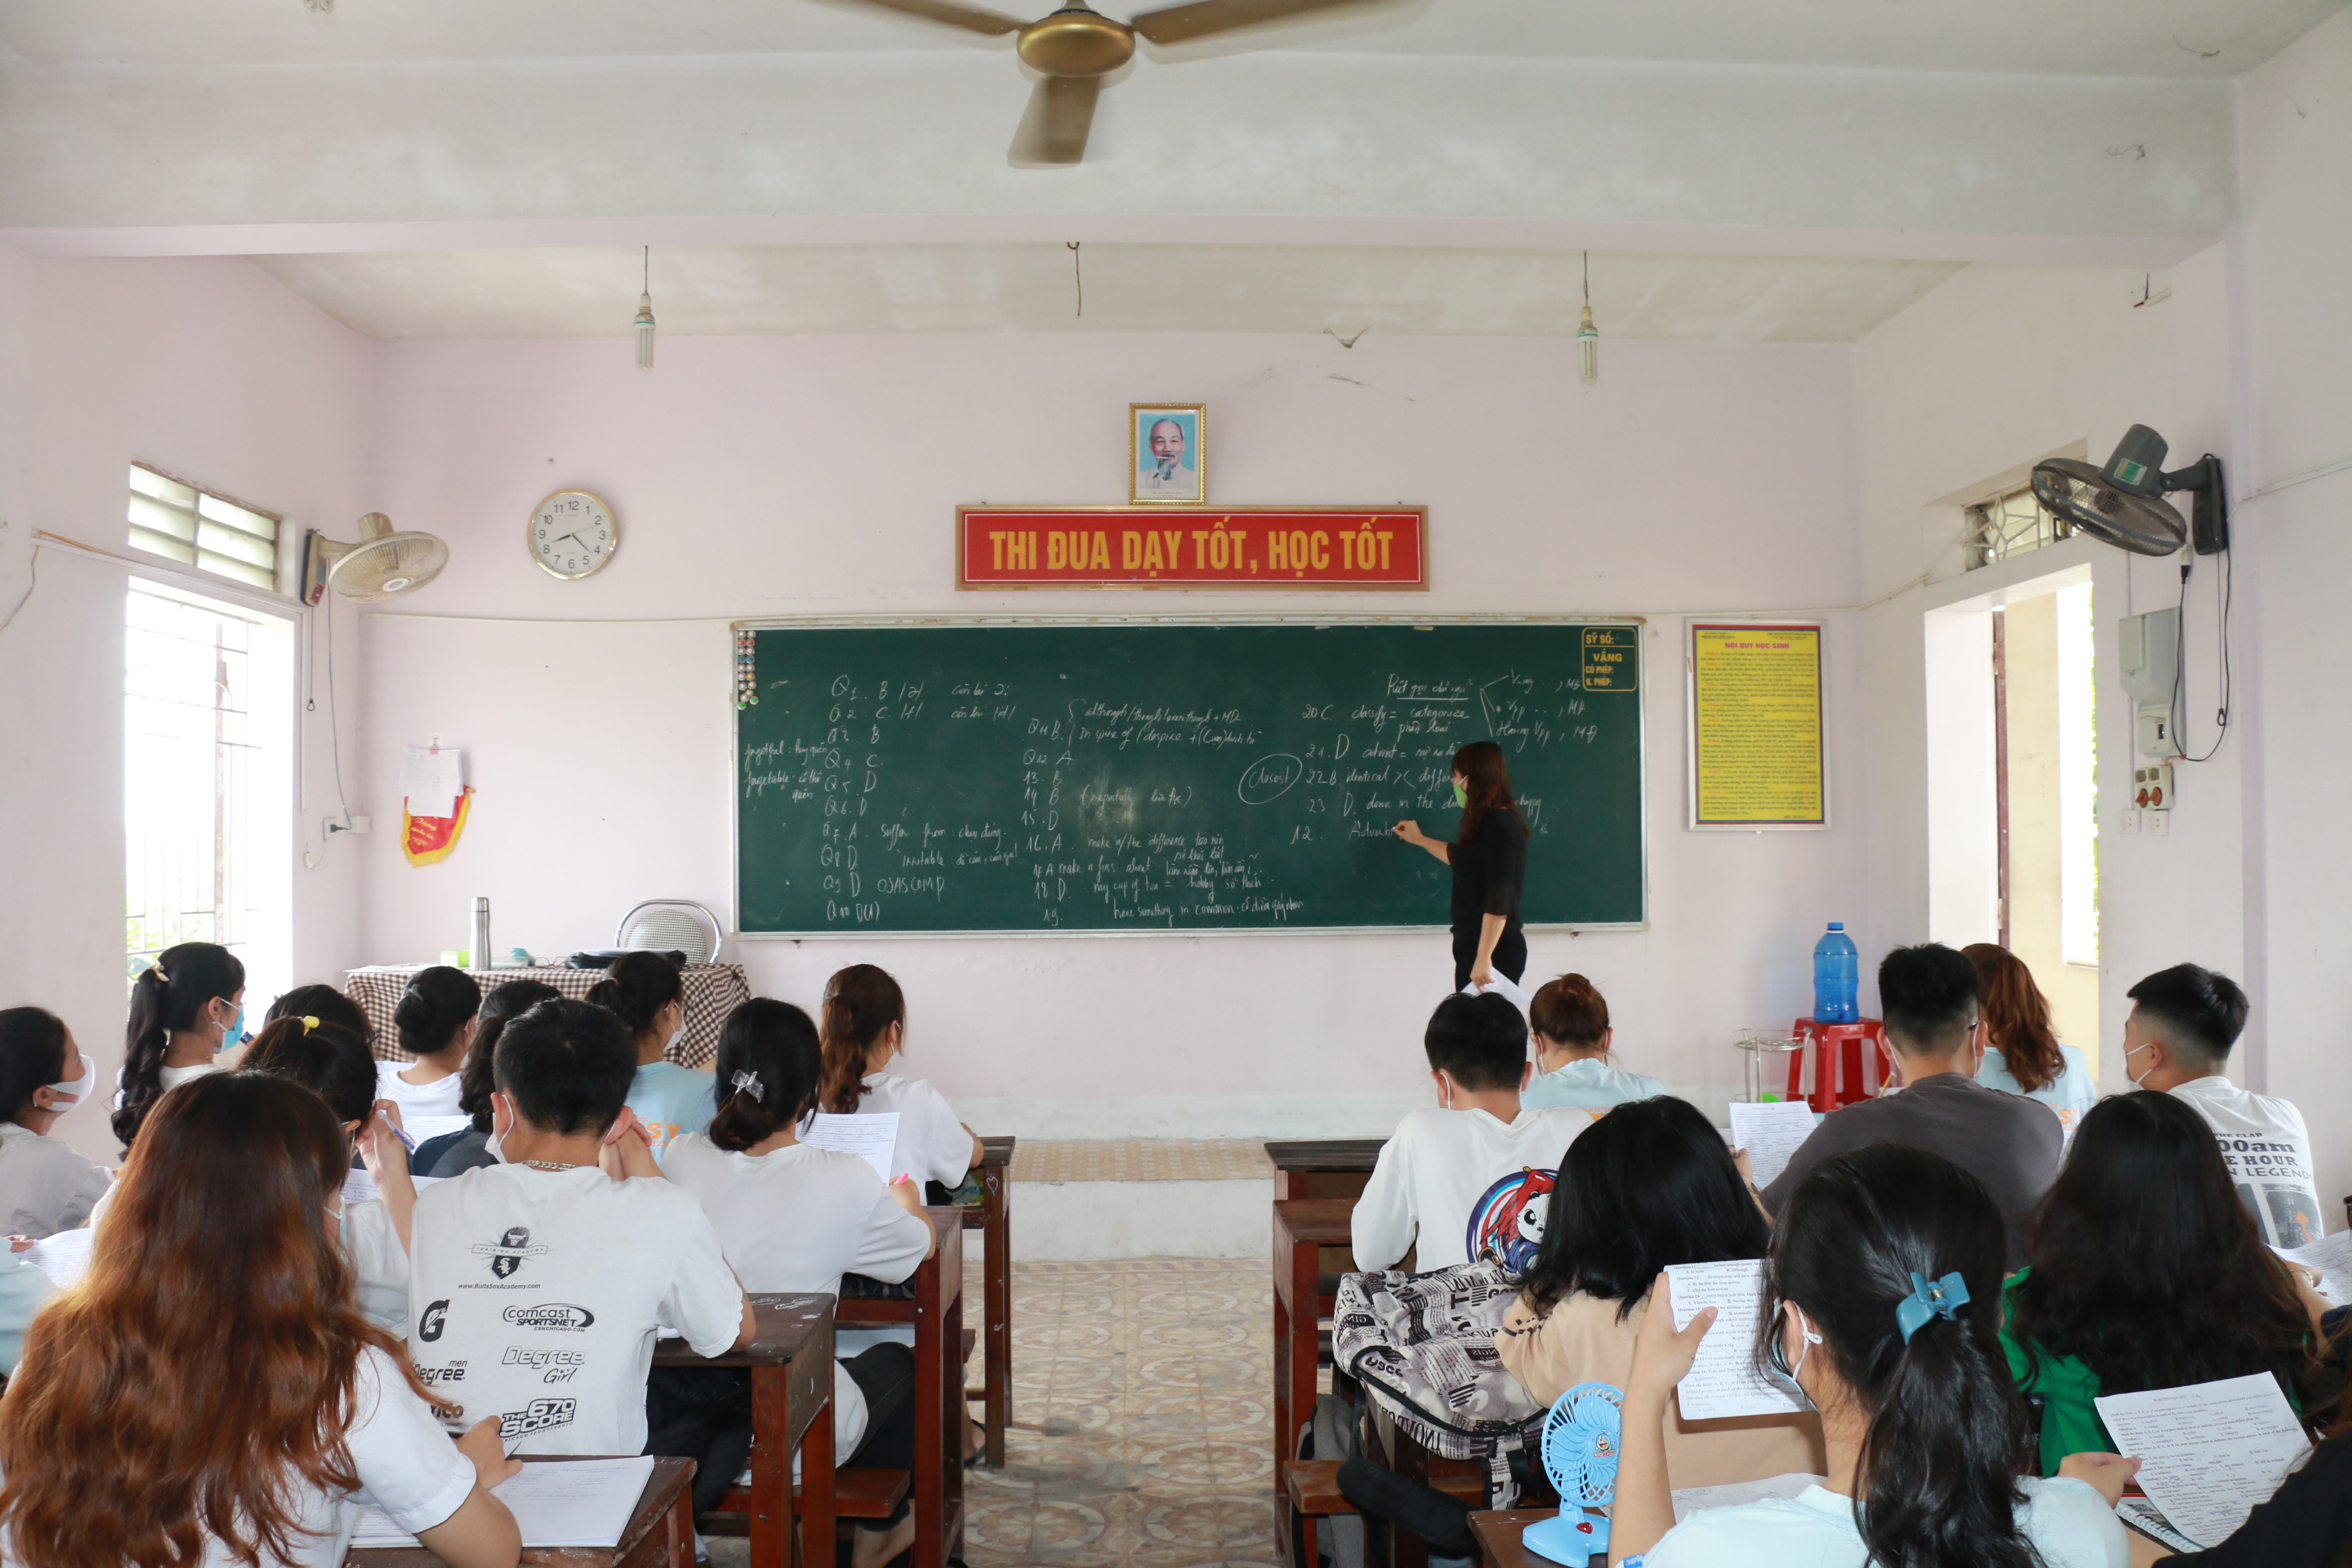 Tiết tiếng Anh của học sinh lớp 12 - Trường THPT Diễn Châu 3. Ảnh: Mỹ  Hà